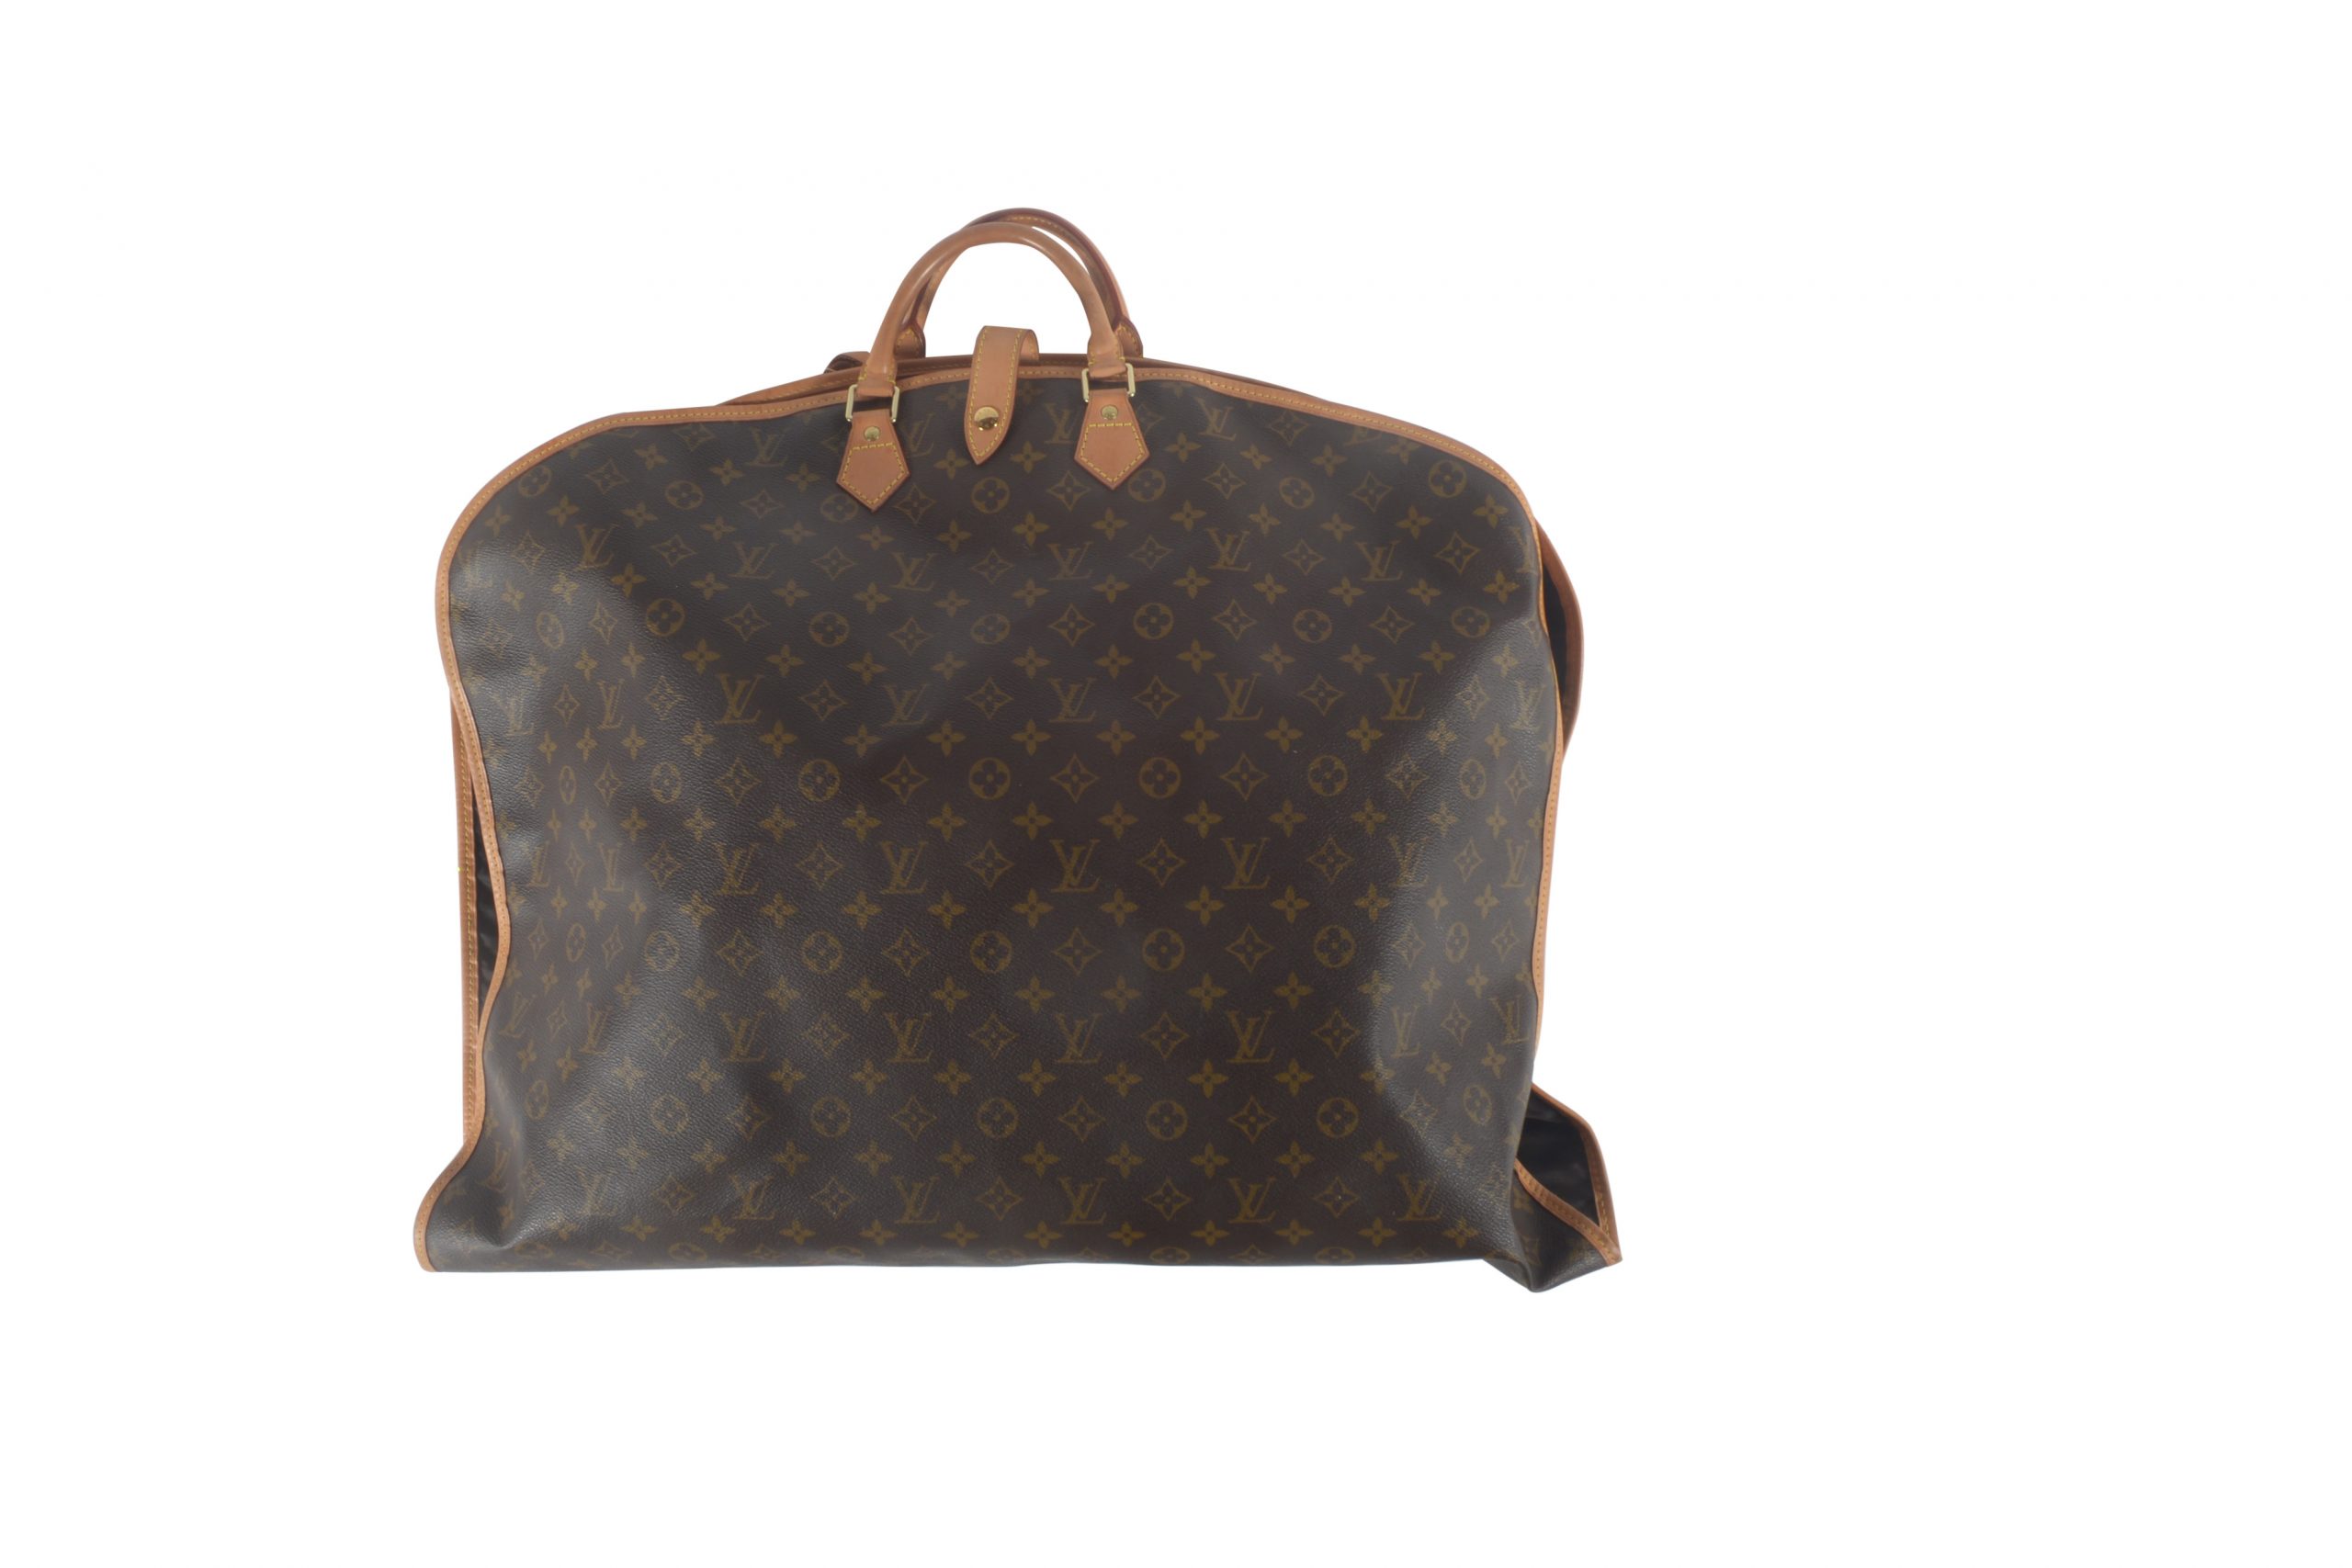 Louis Vuitton Monogram Hunting Bag - Janet Mandell